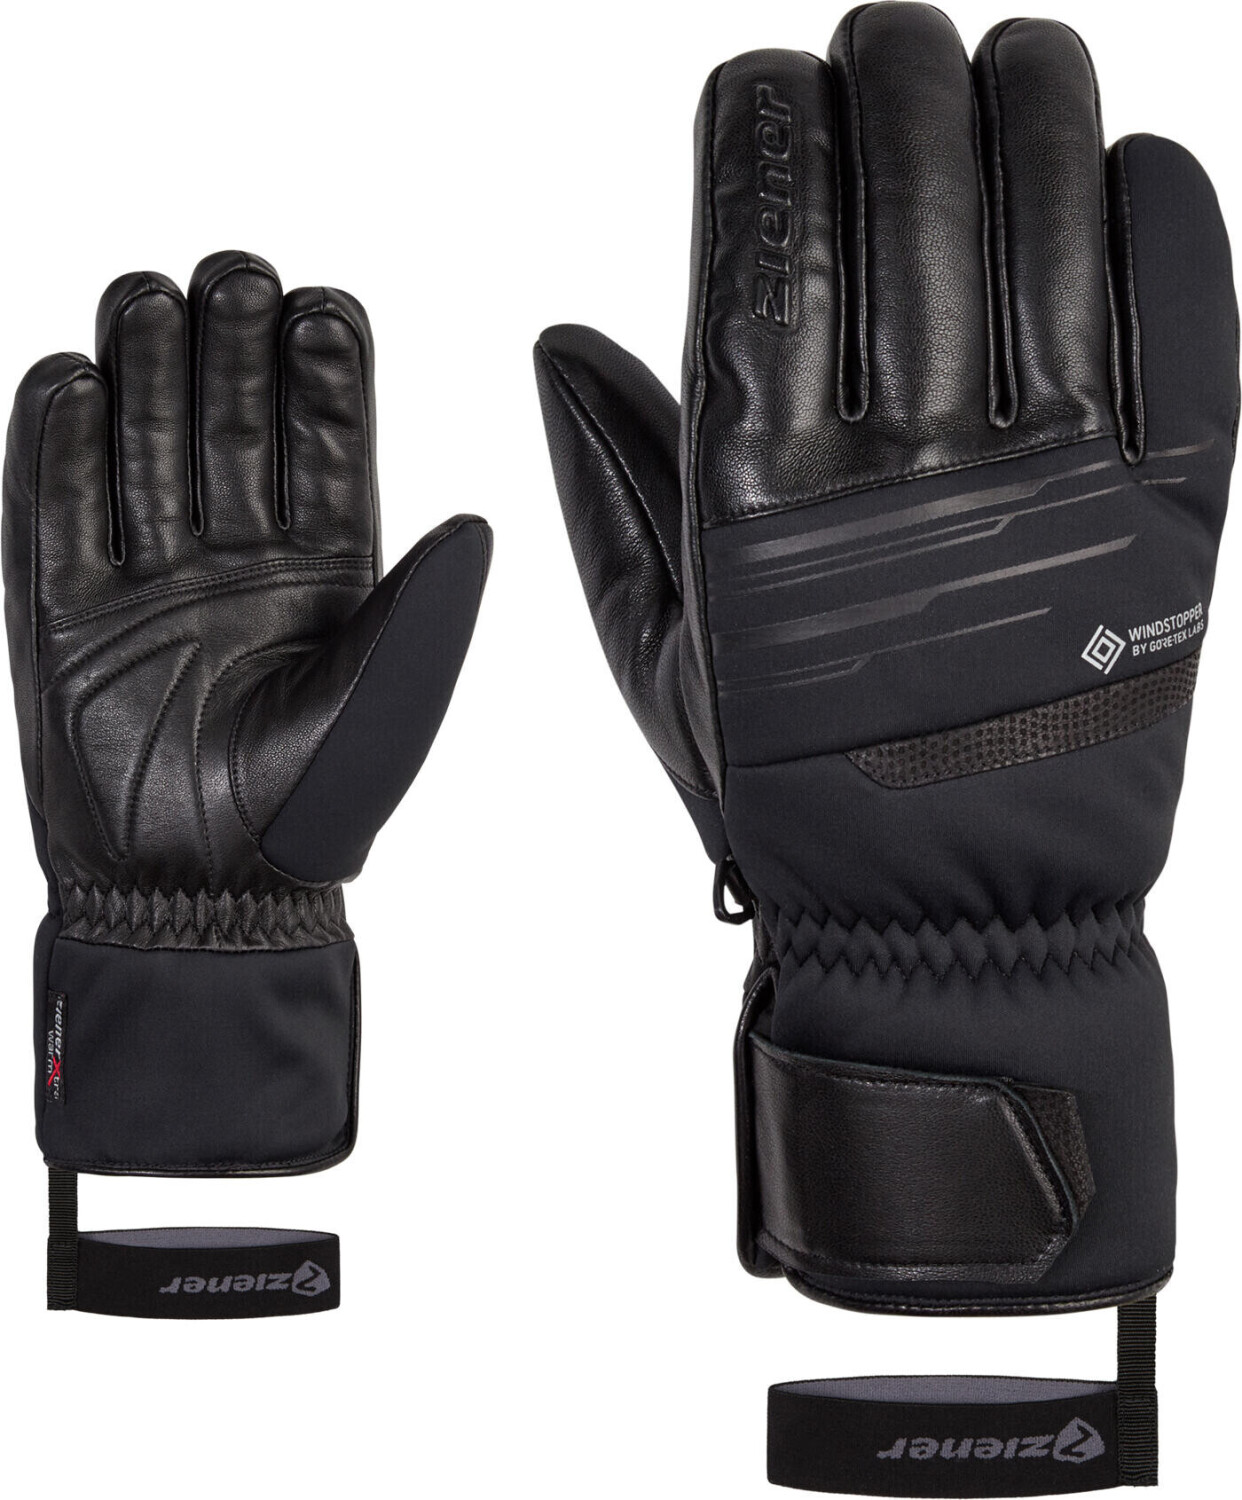 Ziener Garcel WS PR Glove Ski Alpine black ab 83,90 € | Preisvergleich bei